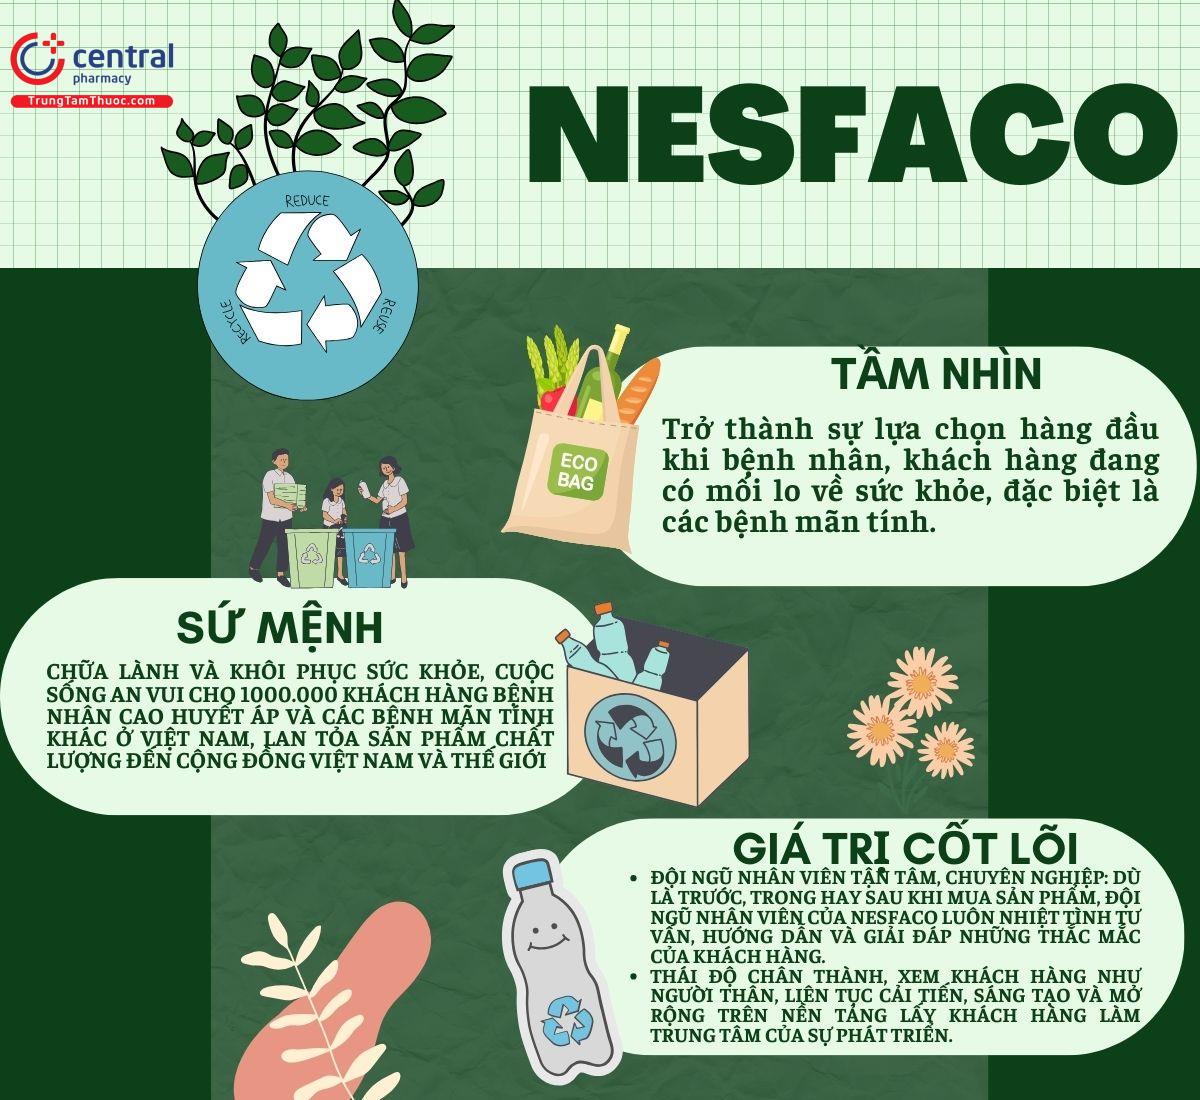 Tầm nhìn - sứ mệnh - giá trị cốt lõi của Nesfaco